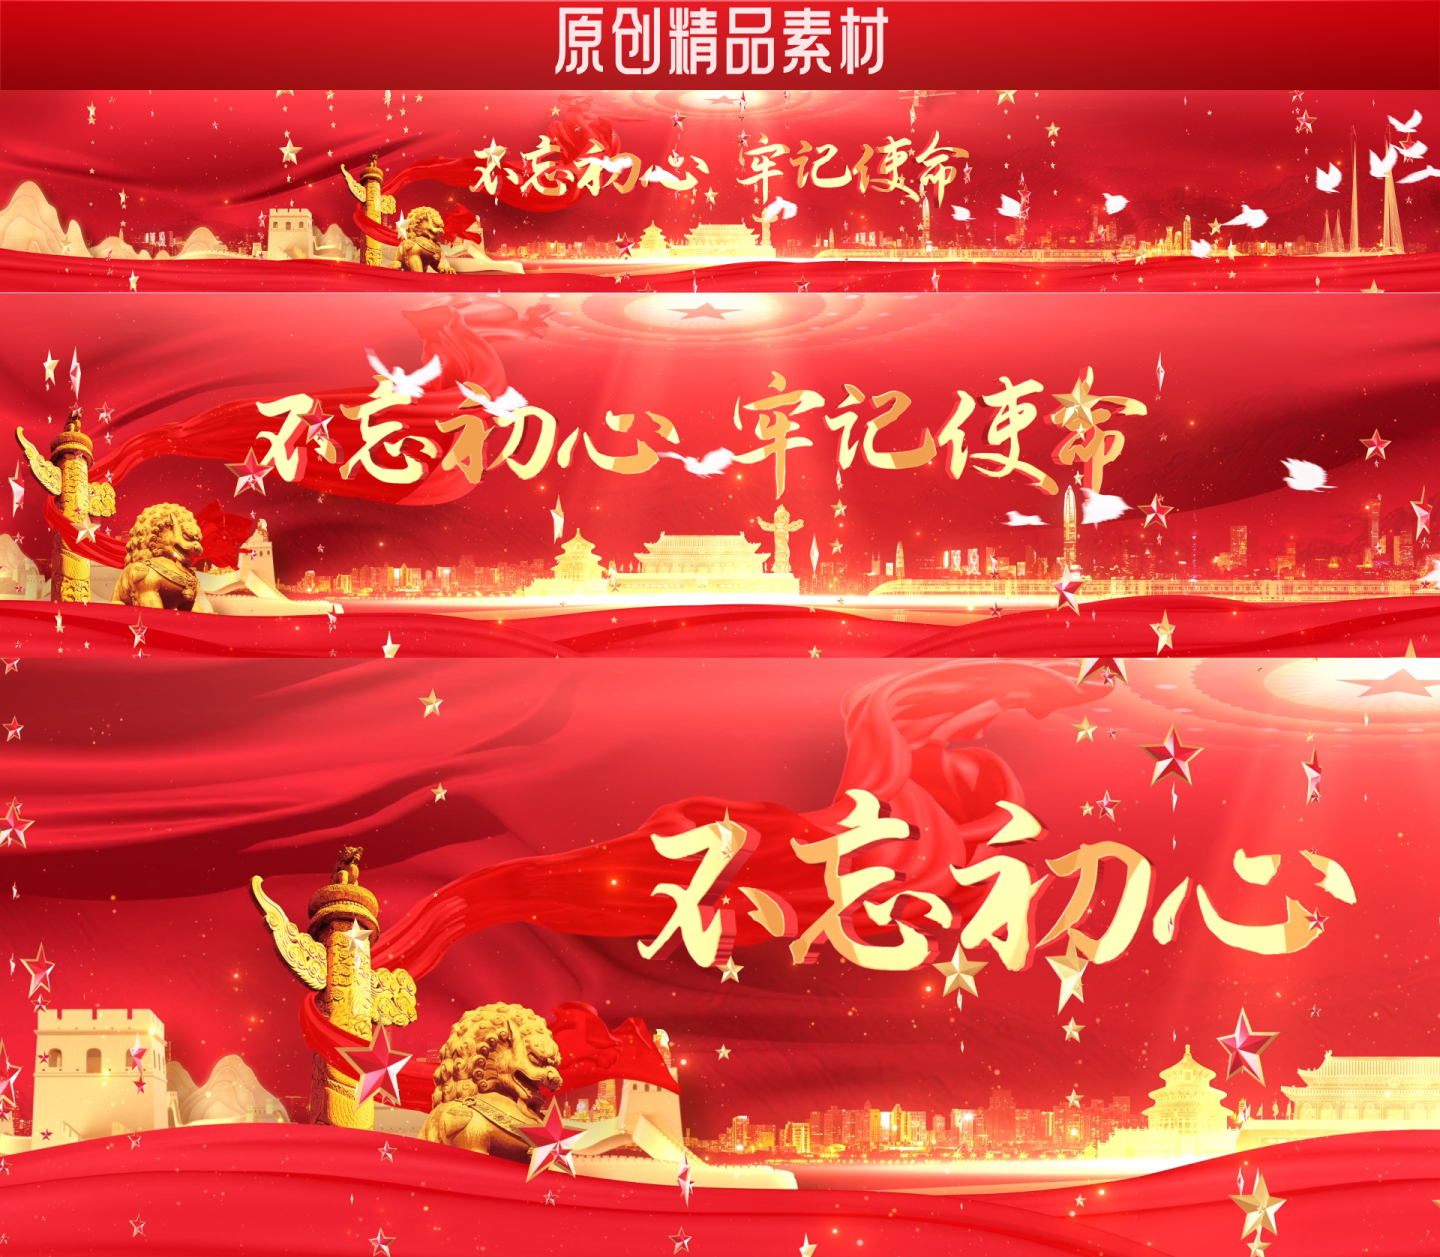 【AE模版】红色党政 大屏背景视频素材2